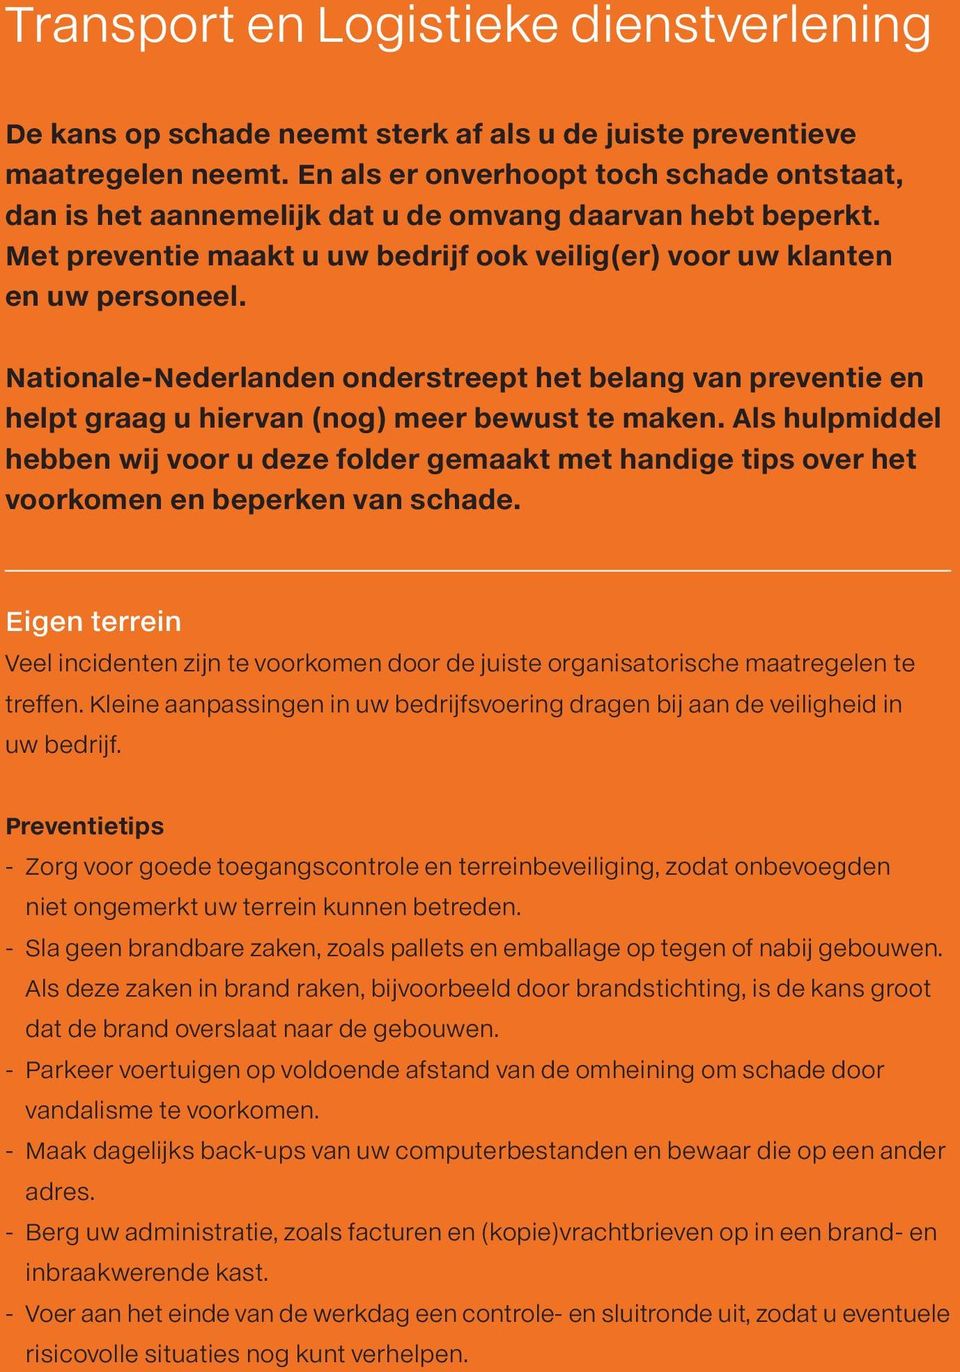 Nationale-Nederlanden onderstreept het belang van preventie en helpt graag u hiervan (nog) meer bewust te maken.